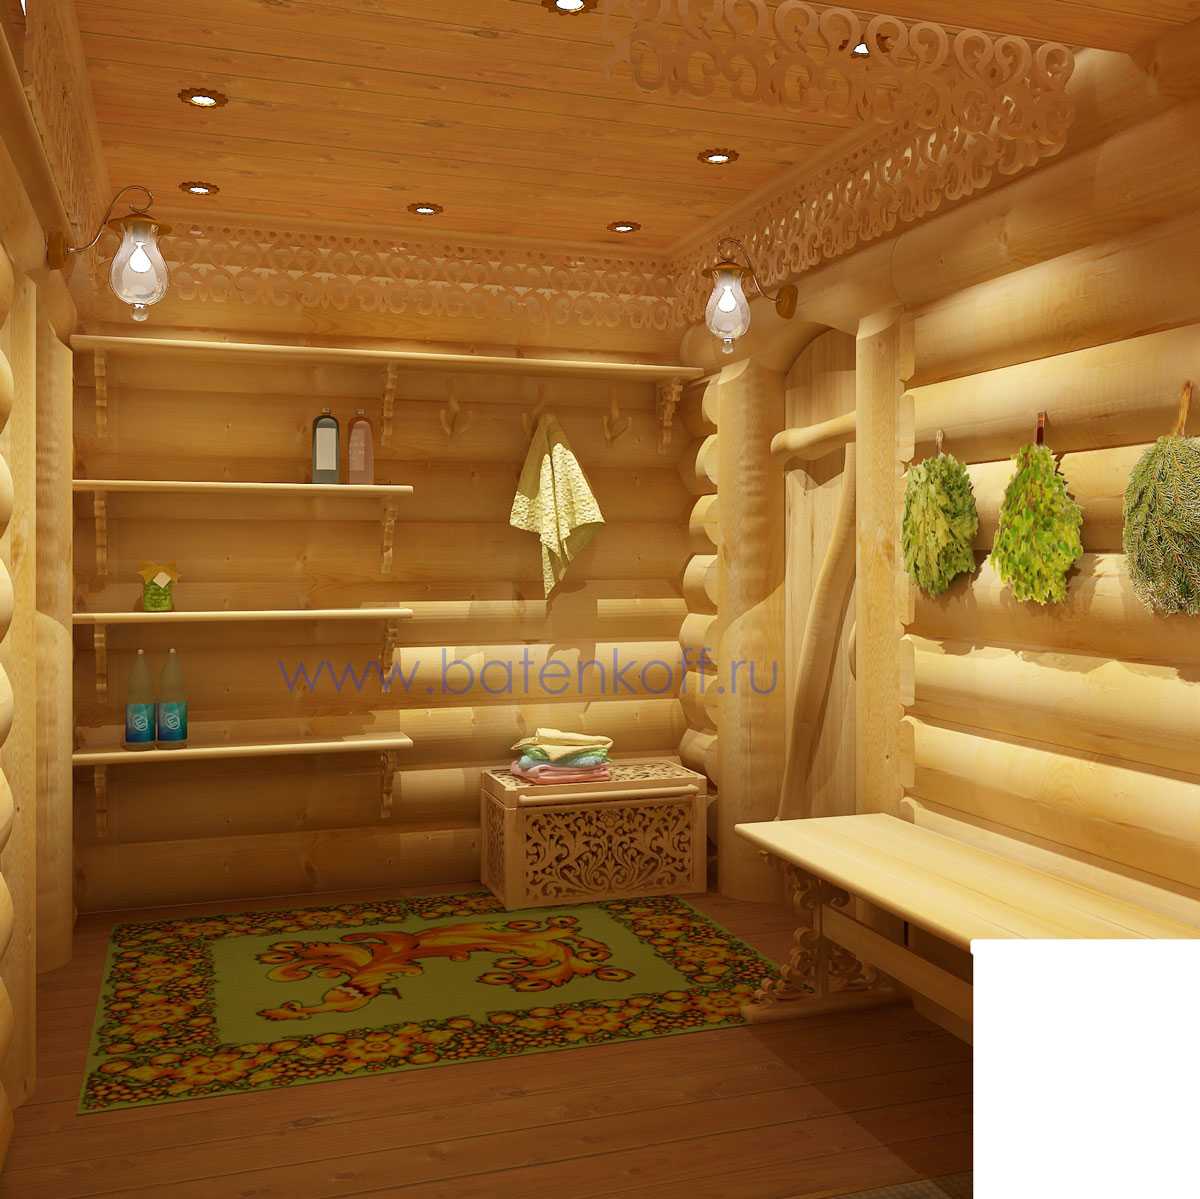 Внутренний интерьер бани с комнатой отдыха